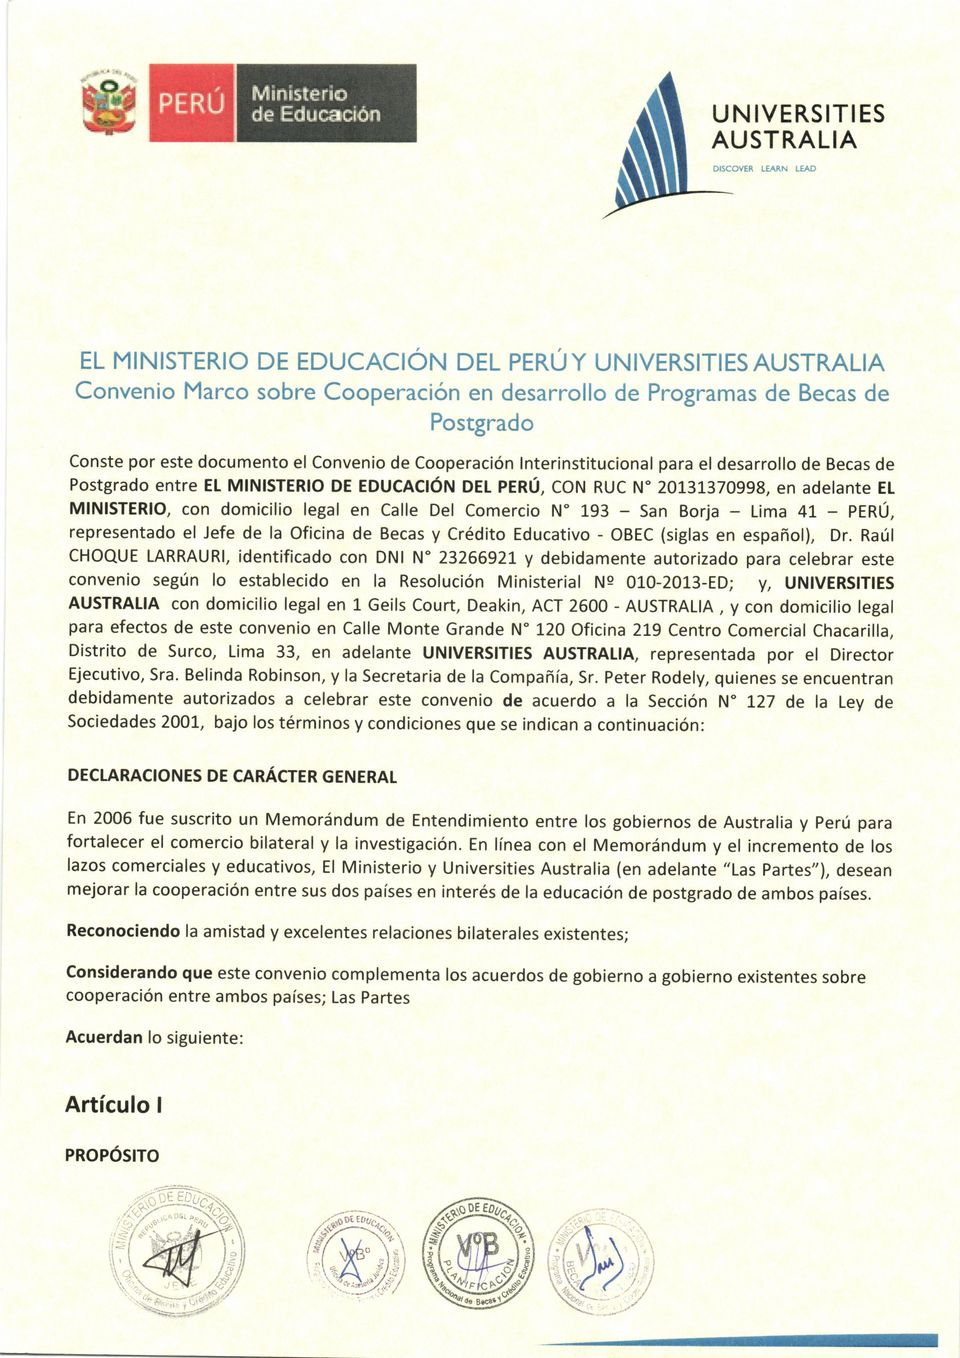 193 - San Borja - Lima 41 - PERÚ, representado el Jefe de la Oficina de Becas y Crédito Educativo - OBEC (siglas en español), Dr.